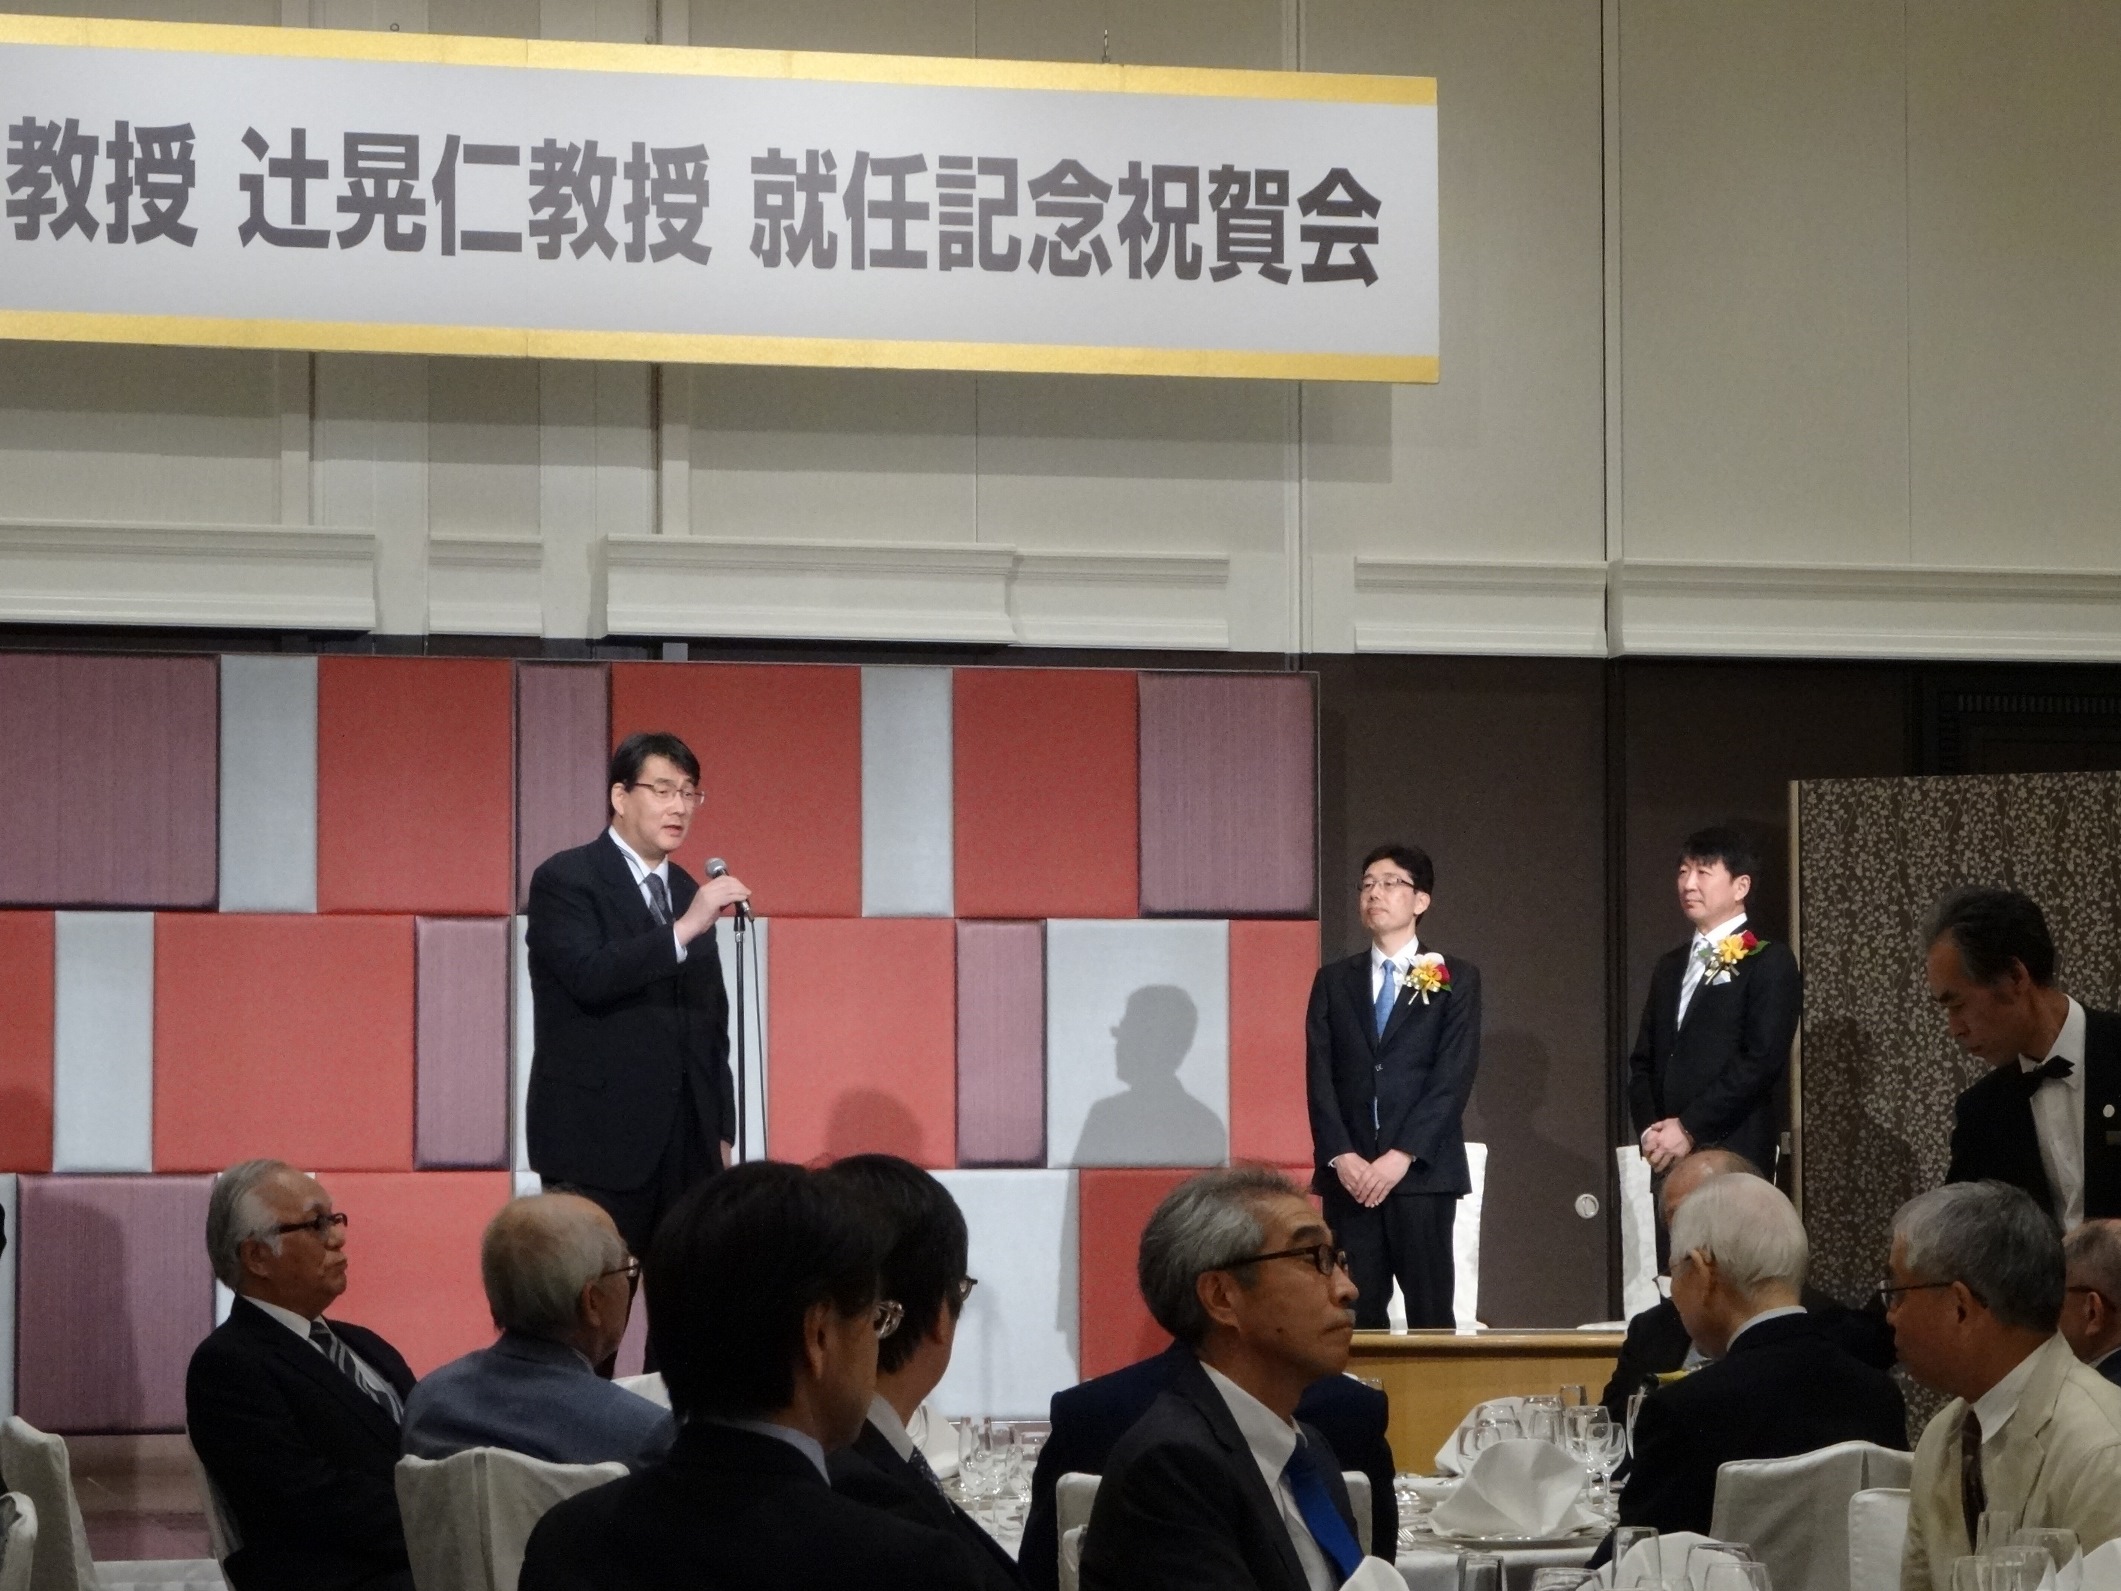 宮原信明先生，辻晃仁先生教授就任祝賀会(左から木浦先生，宮原先生，辻先生)